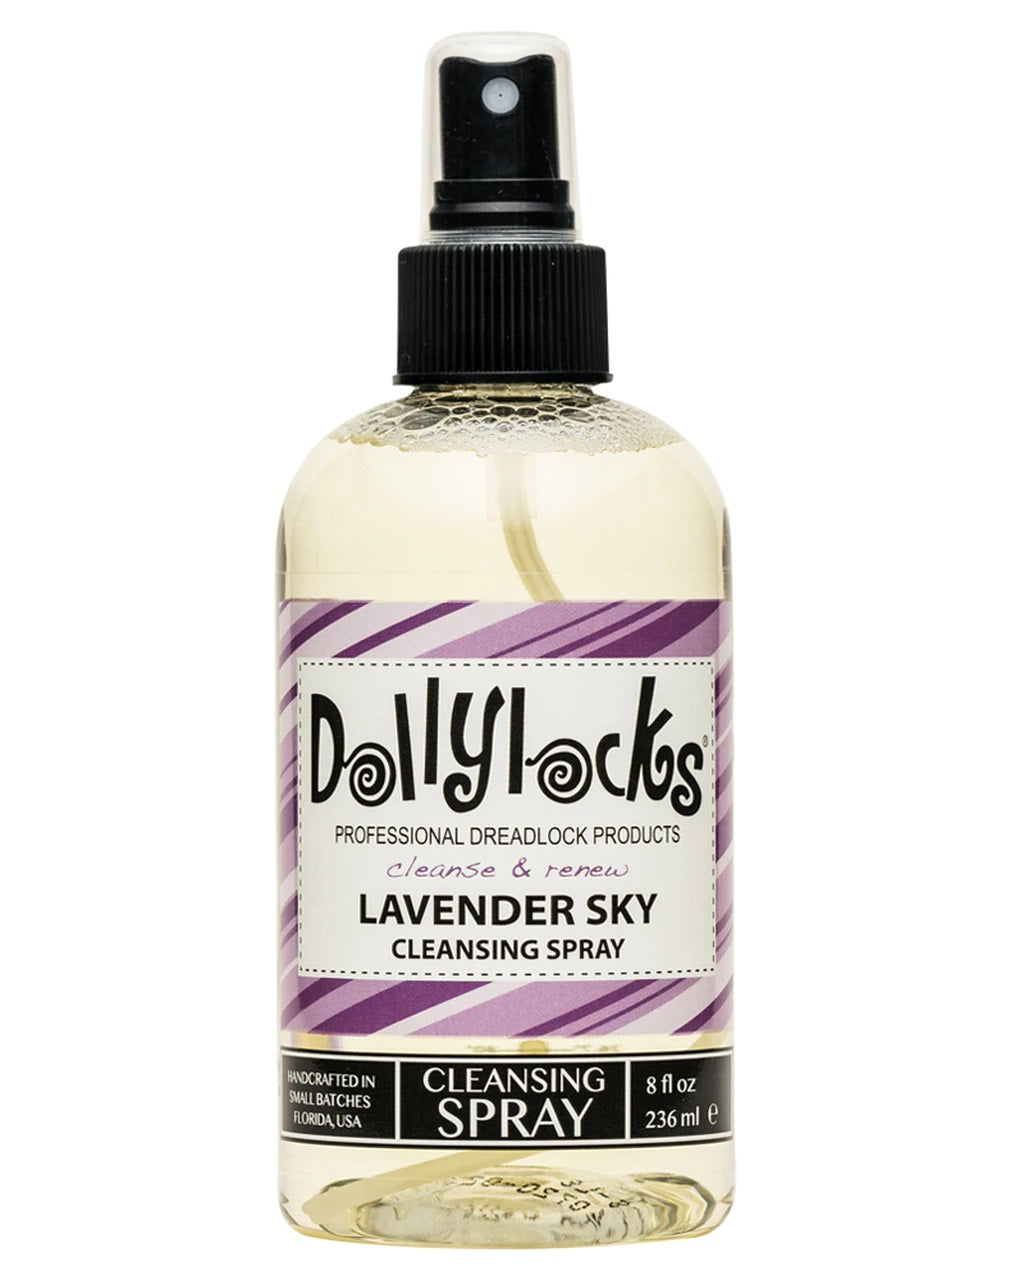 Dollylocks - Dreadlocks Cleansing Spray - Lavender Sky (8oz/236ml)